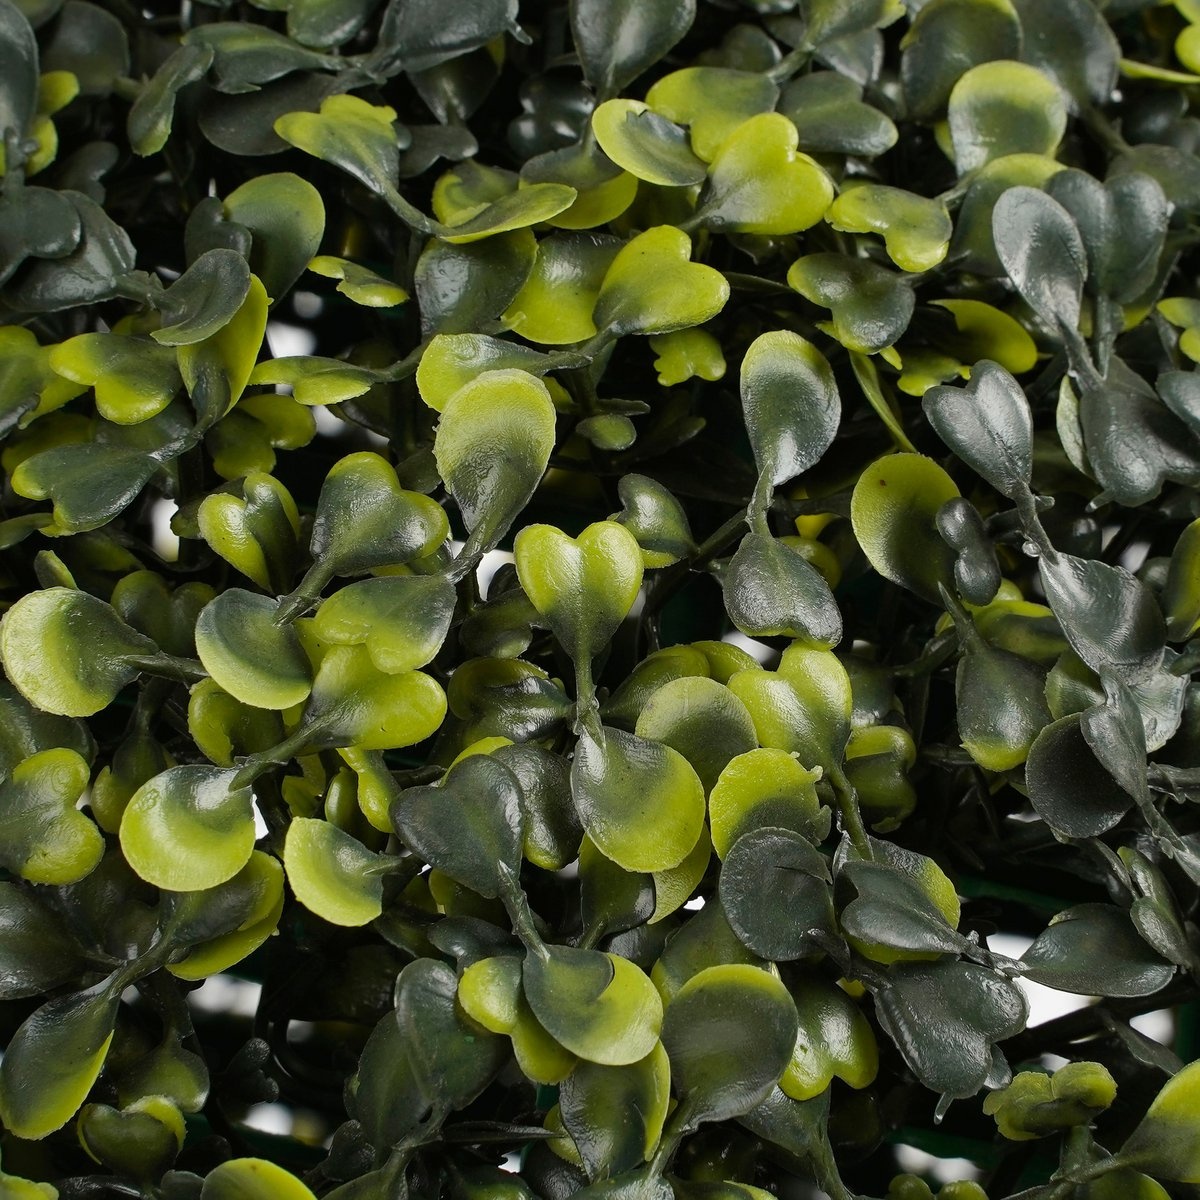 KantoormeubelenPlus Buxus Bol Kunstplant voor Buiten Hangend - Ø28 cm - Groen